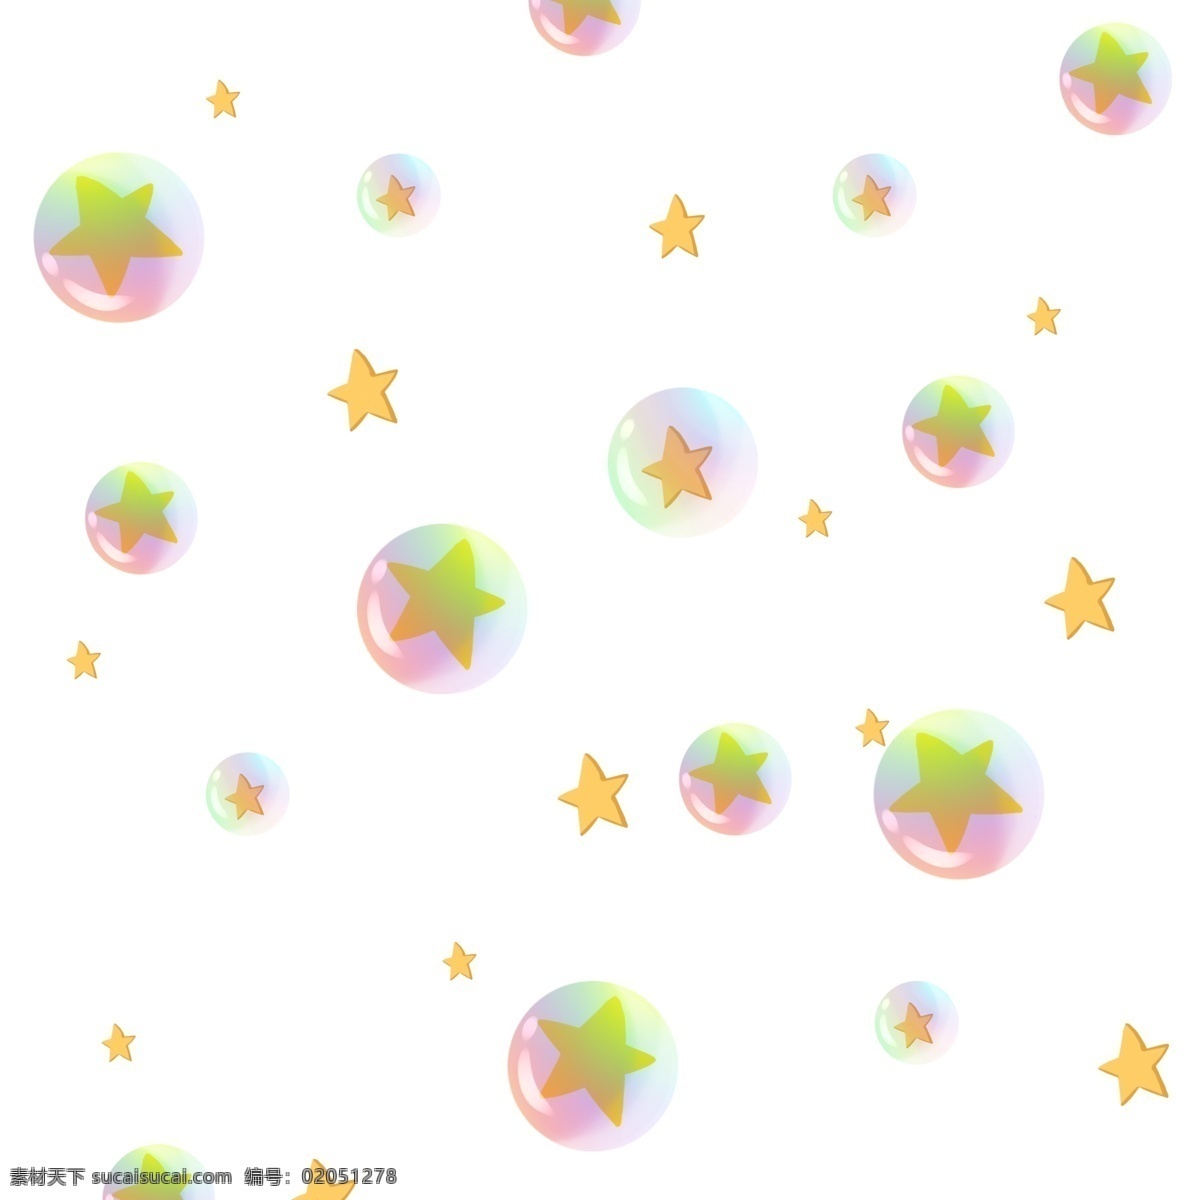 彩虹 气泡 球 星星 漂浮 手绘 原创 透明 底 免 抠 彩虹气泡 漂浮星星 黄色 七彩 闪 亮晶晶 小清新 卡通手绘 透明底 免抠